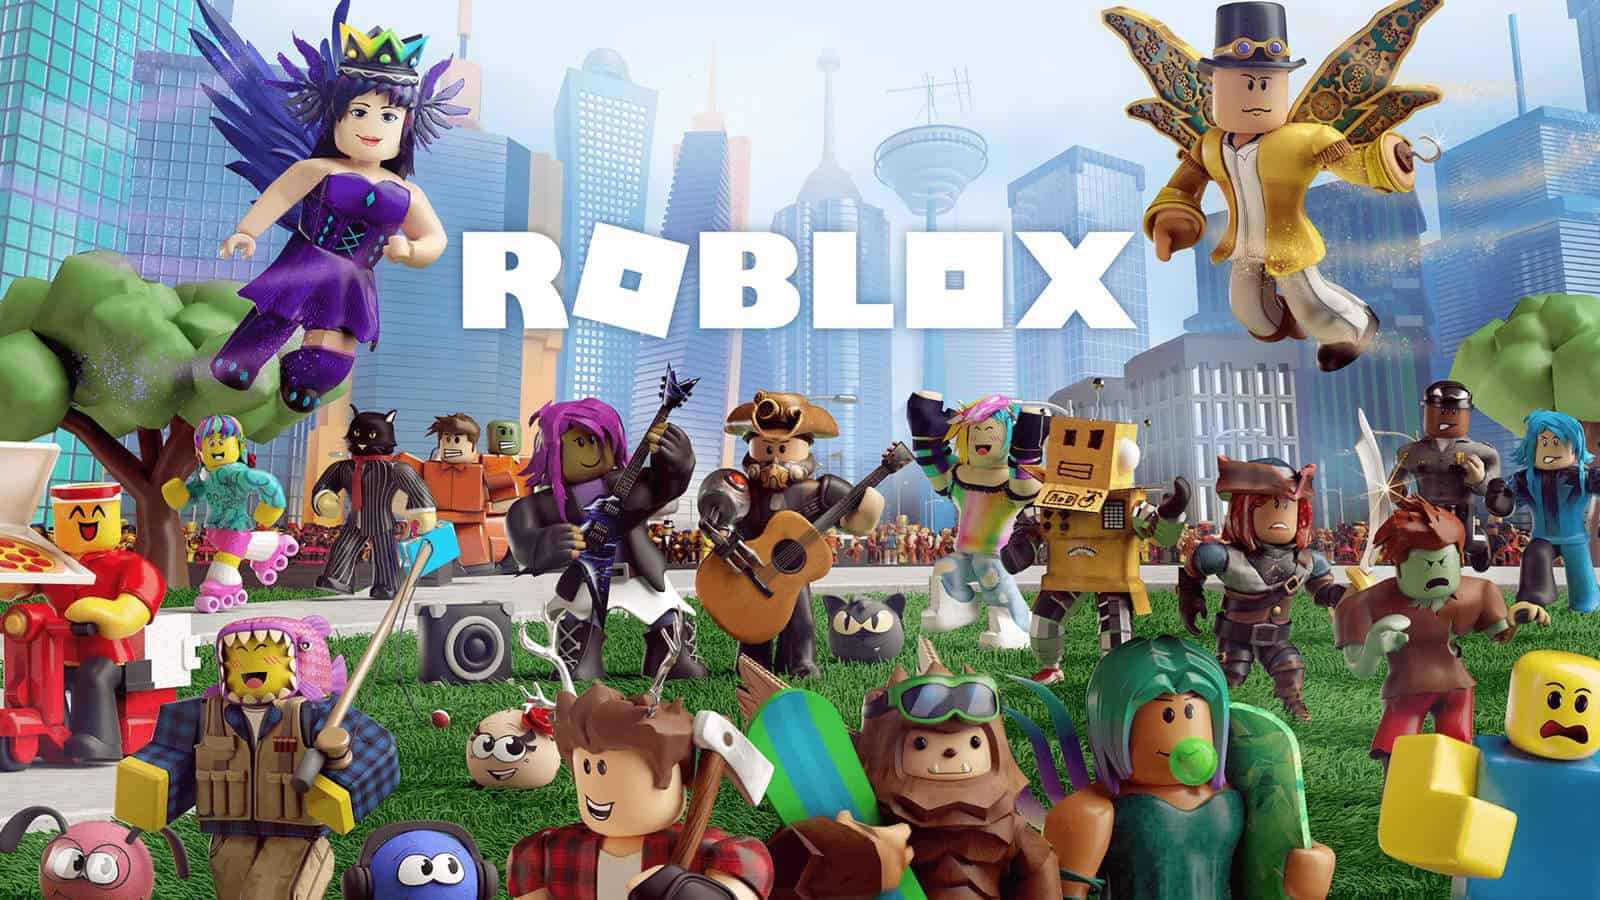 18 jogos parecidos com Roblox para criar mundos! - Liga dos Games